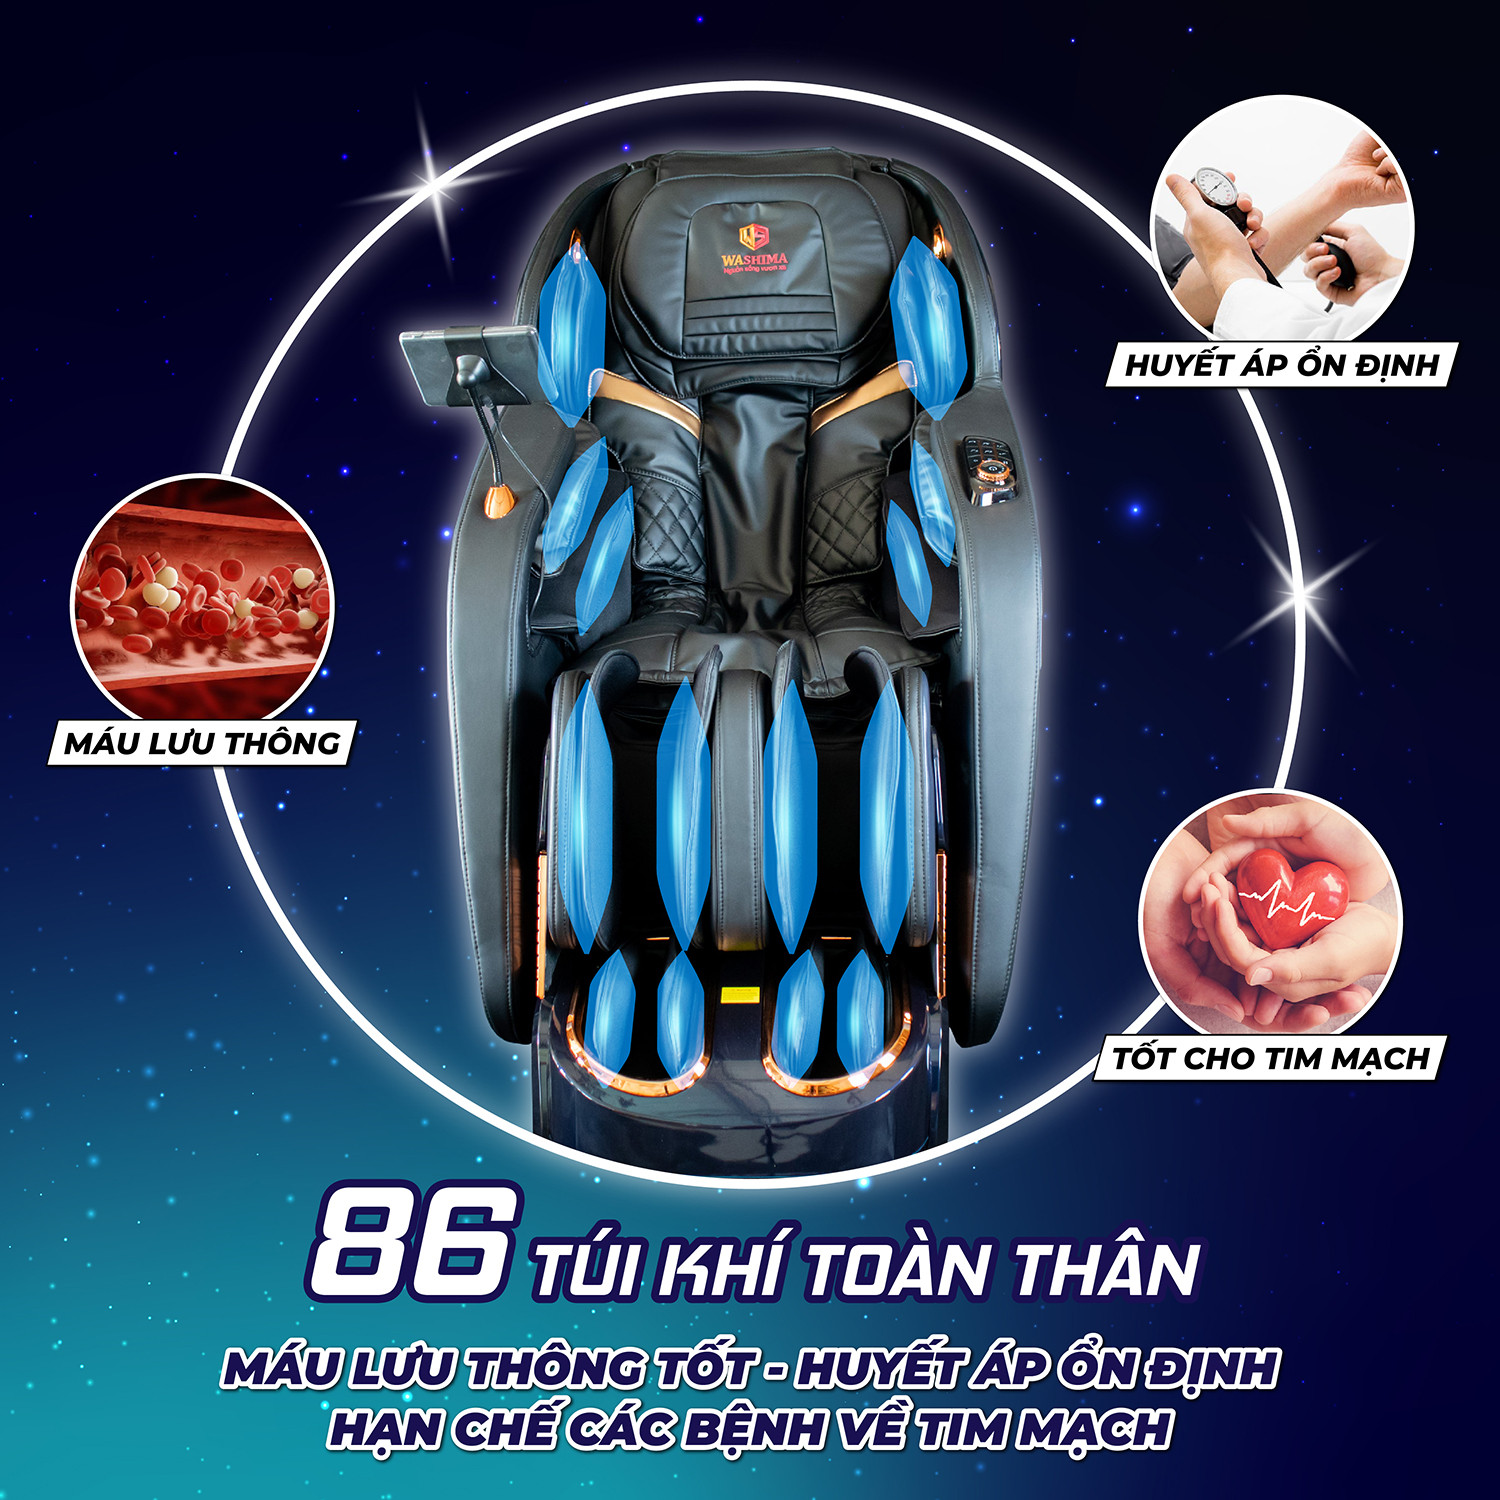 Hệ thống 86 túi khí massage toàn thân